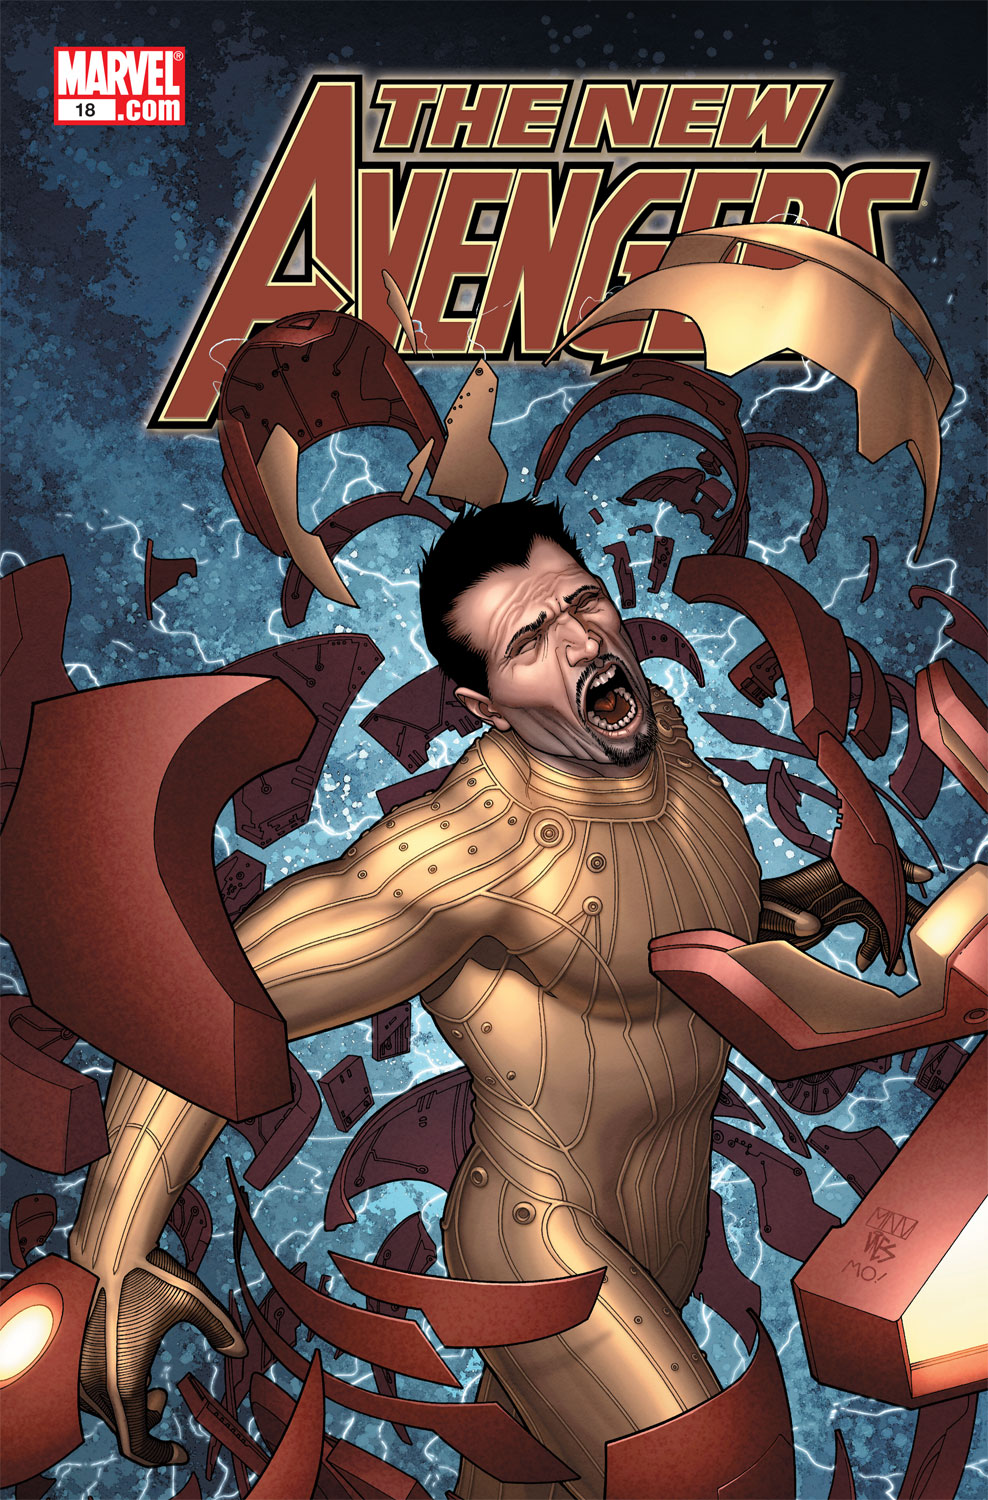 New Avengers (2004) #18